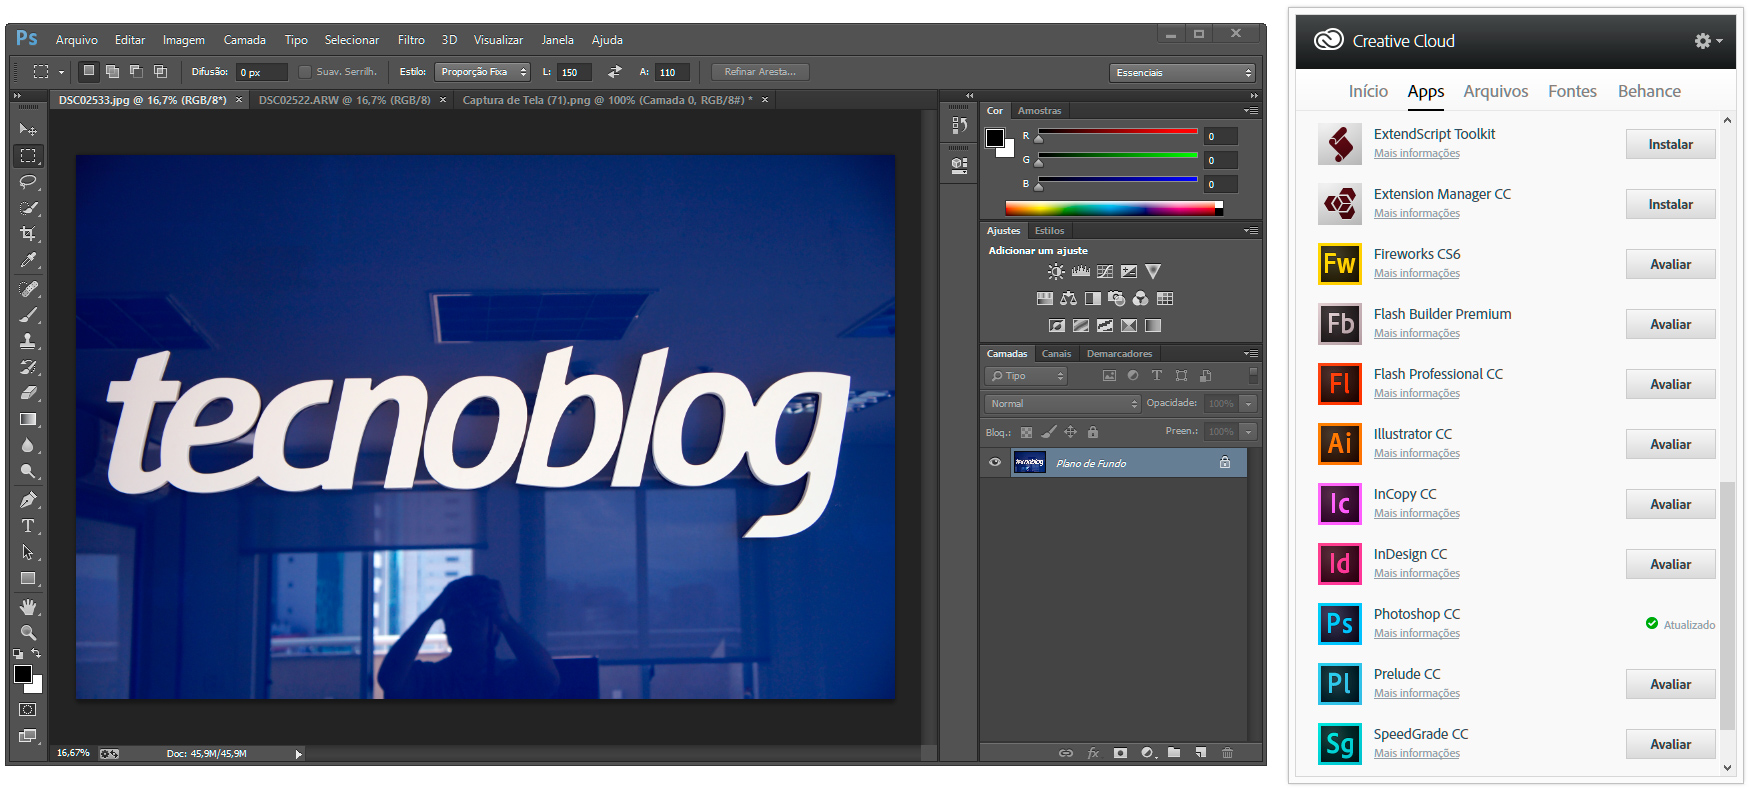 Adobe lança novo Photoshop e aplicativos da Creative Cloud